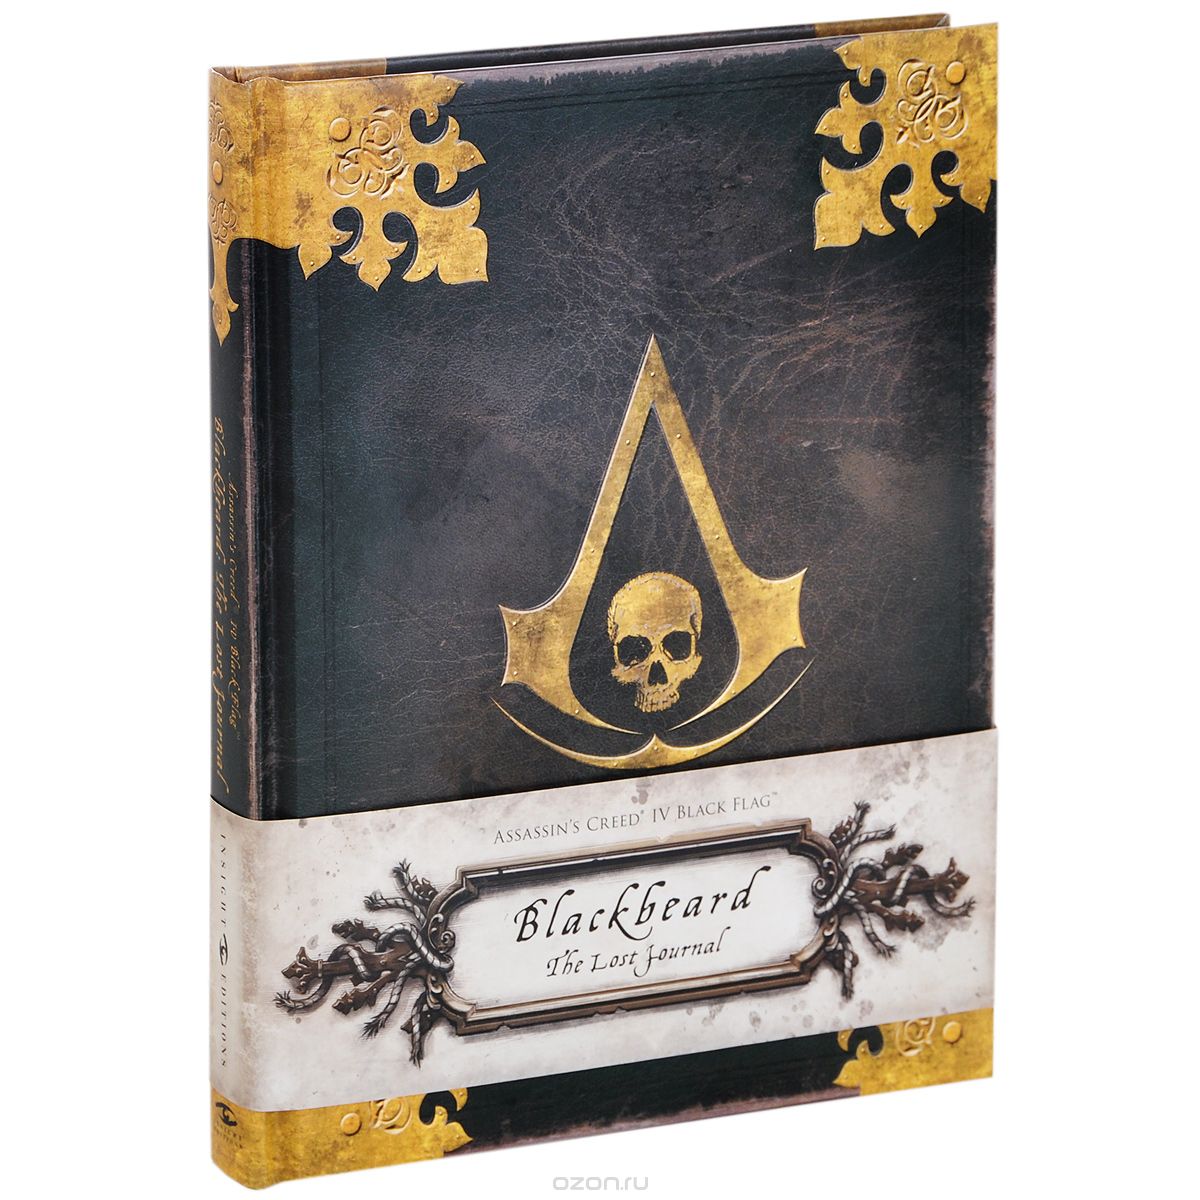 Assassin's Creed IV Black Flag: Blackbeard: The Lost Journal